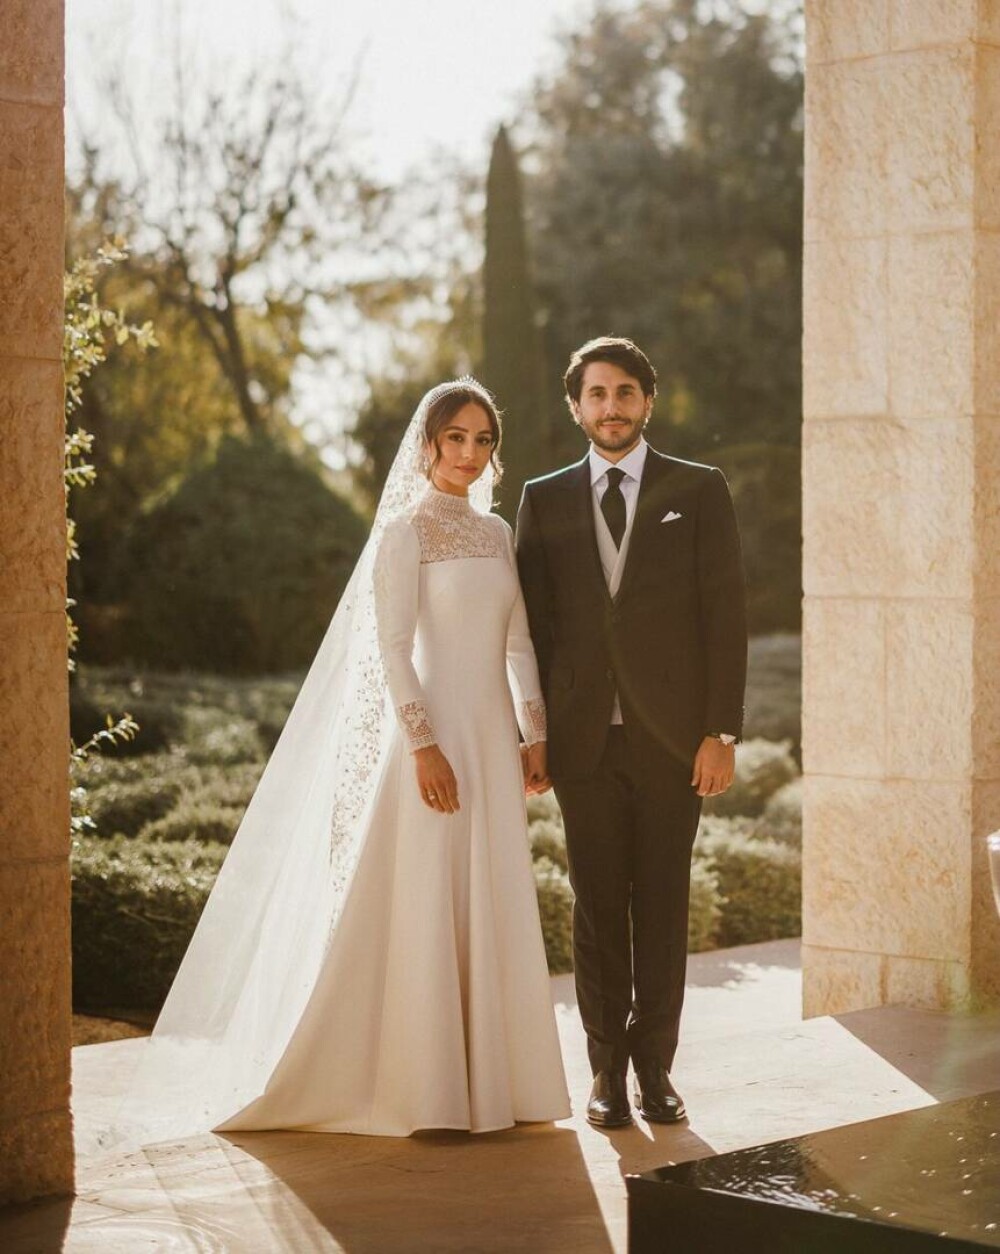 Prințesa Iman a Iordaniei s-a căsătorit cu un finanțist de origine greacă. Imaginile sunt spectaculoase GALERIE FOTO & VIDEO - Imaginea 16